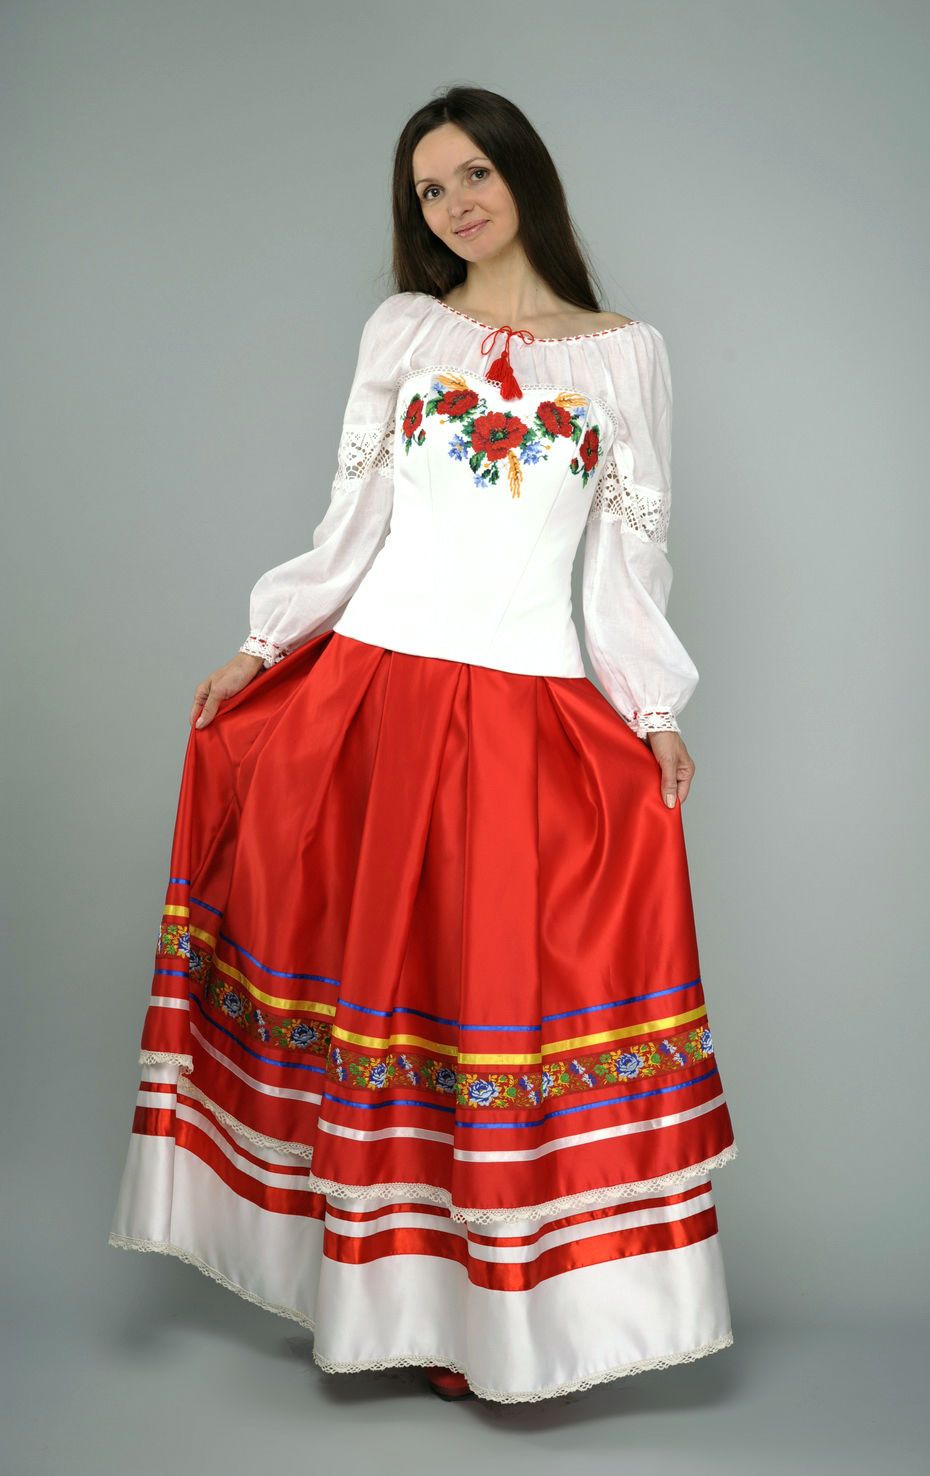 Jogo da roupa em estilo étnico: saia, blusa, espartilho foto 1